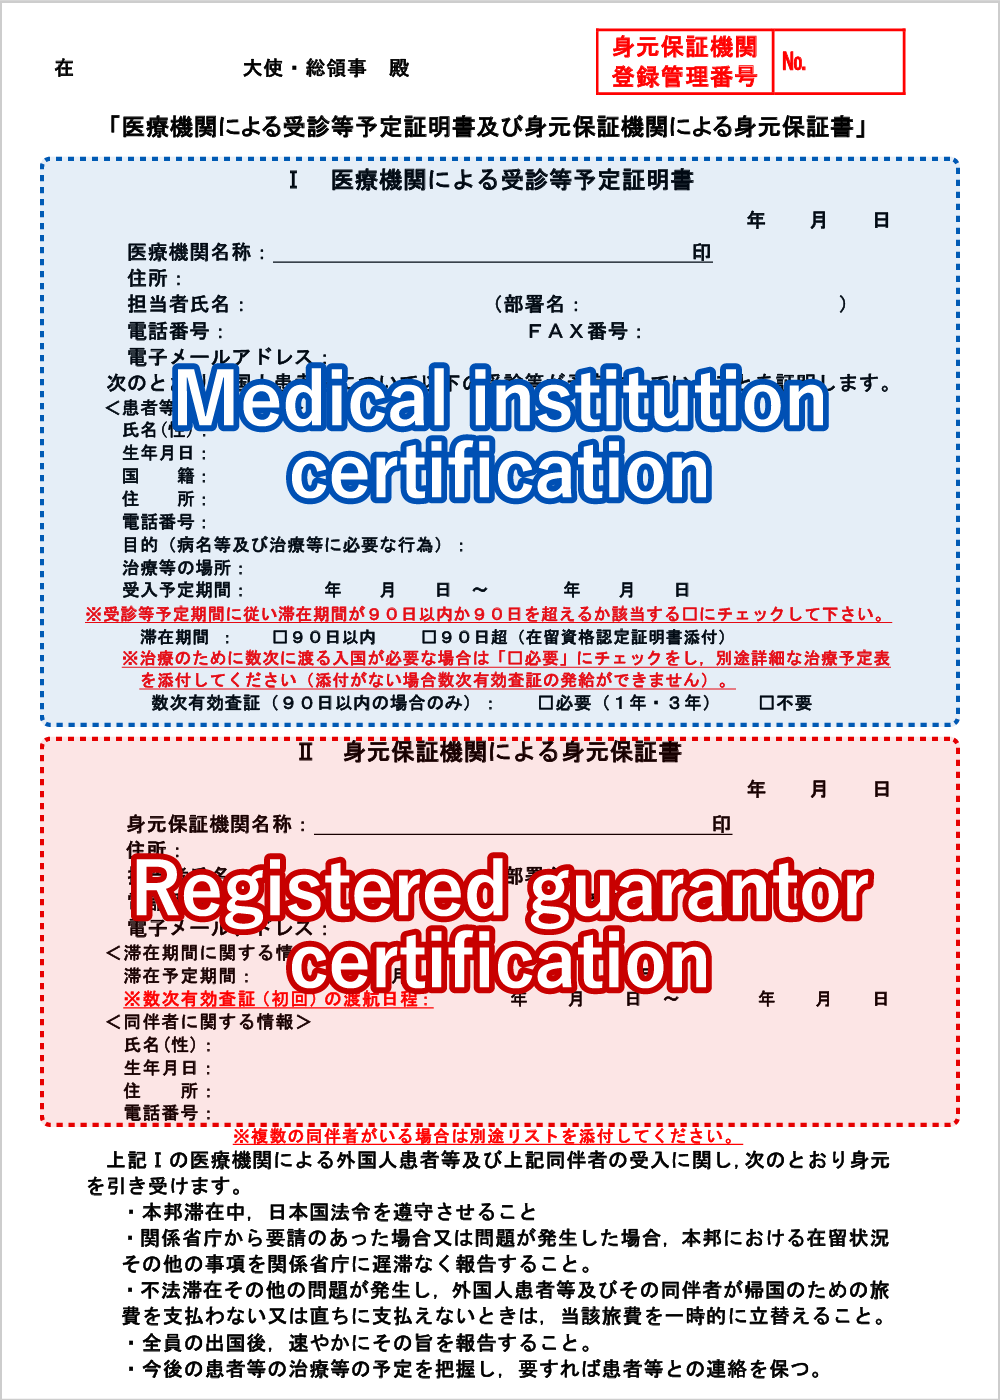 Medical institution certification/Registered guarantor certification